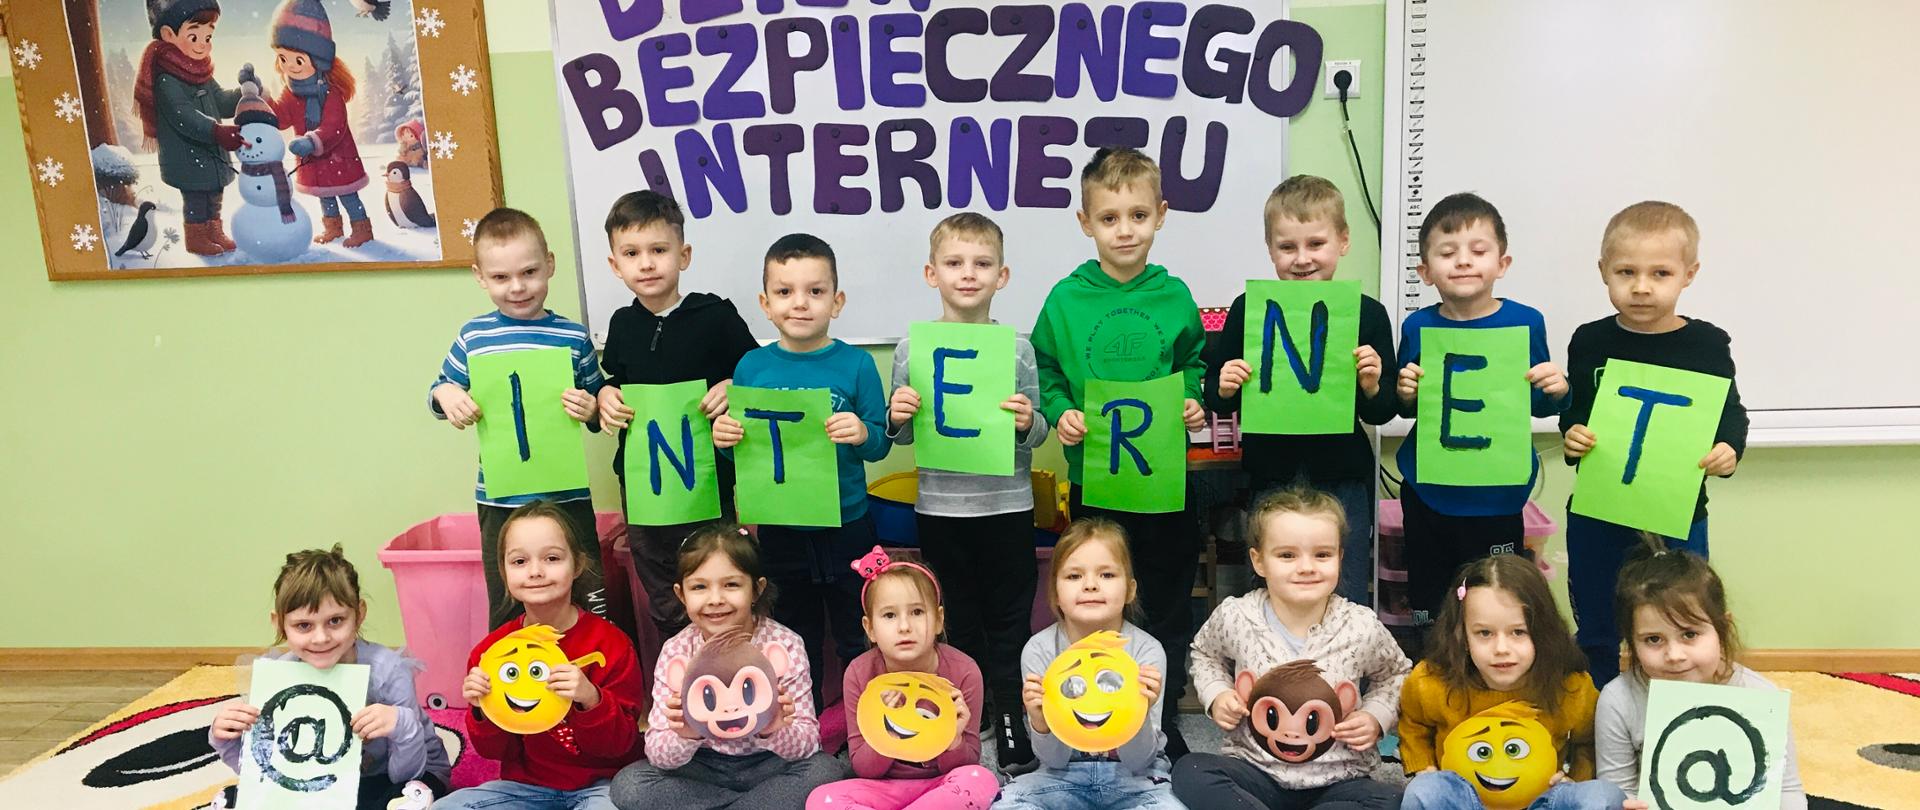 Dzieci z grupy 5 latków trzymają w rękach napis "Internet" w ramach Dnia Bezpiecznego Internetu